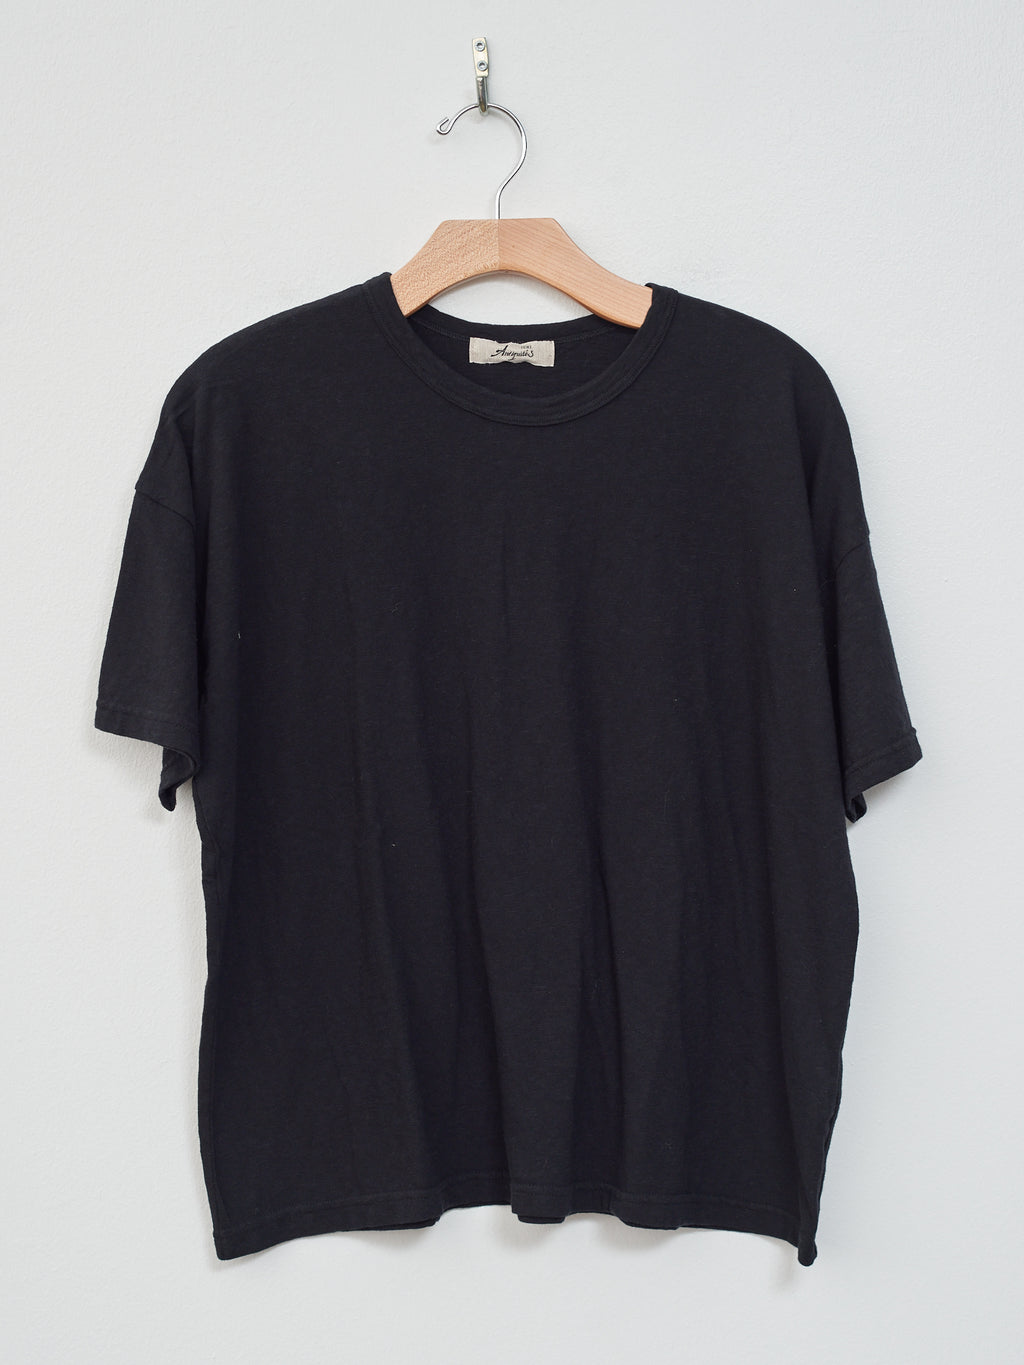 Namu Shop - Ichi T-Shirt - Black